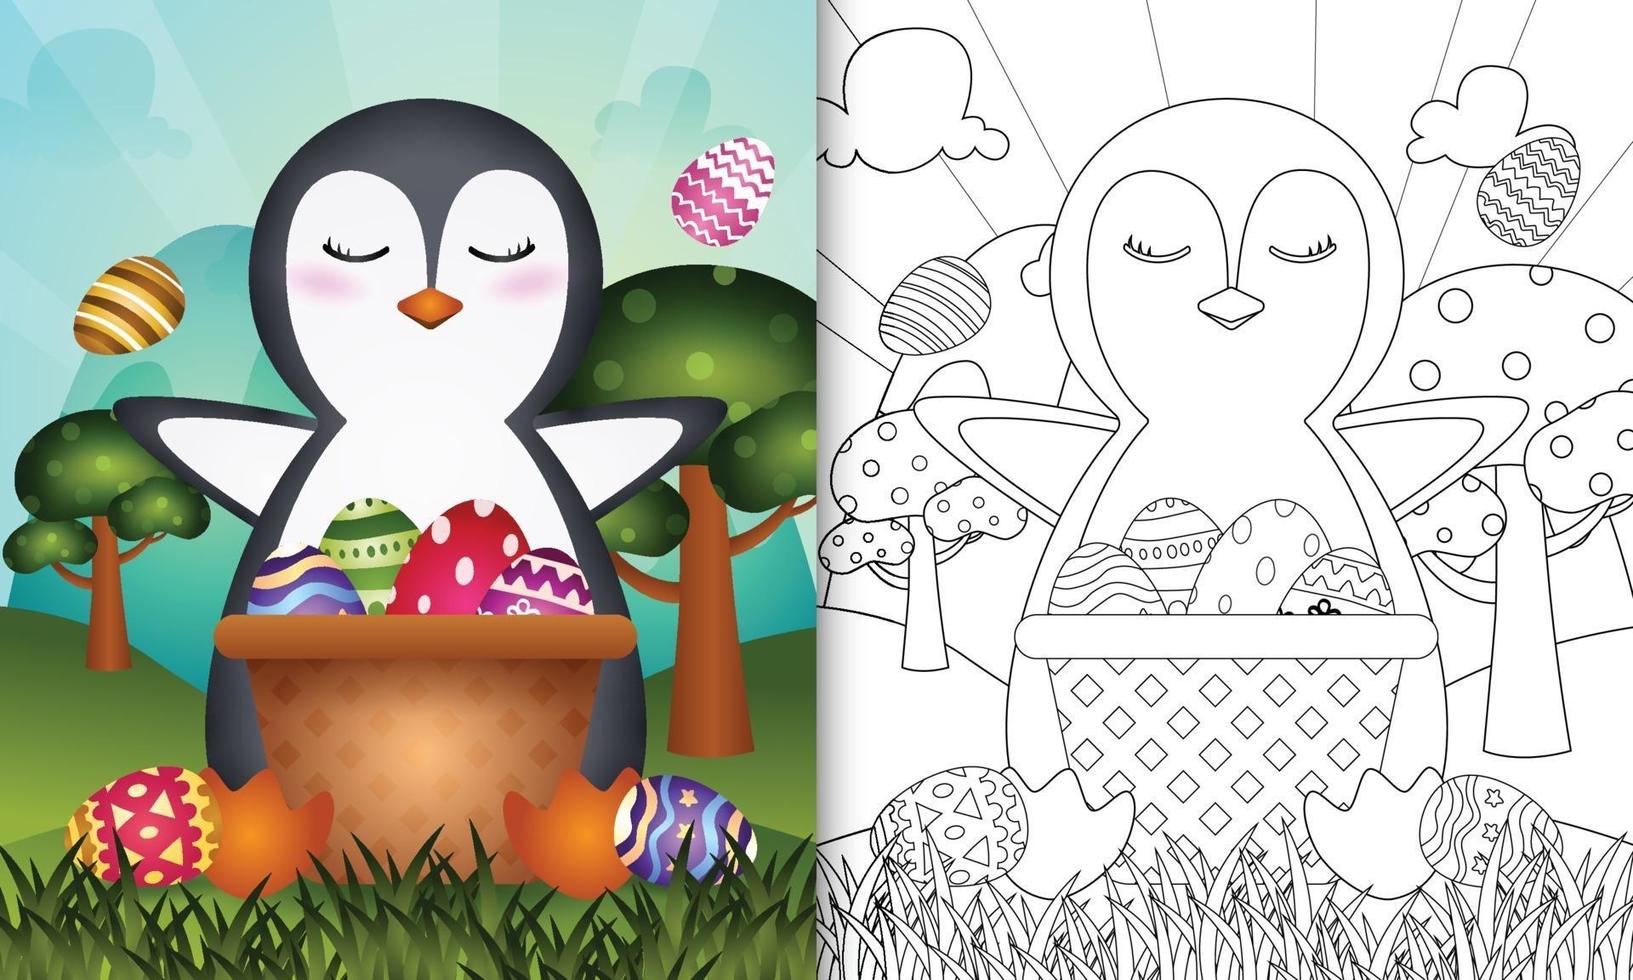 Malbuch für Kinder themenorientierten glücklichen Ostertag mit Charakterillustration eines niedlichen Pinguins im Eimerei vektor